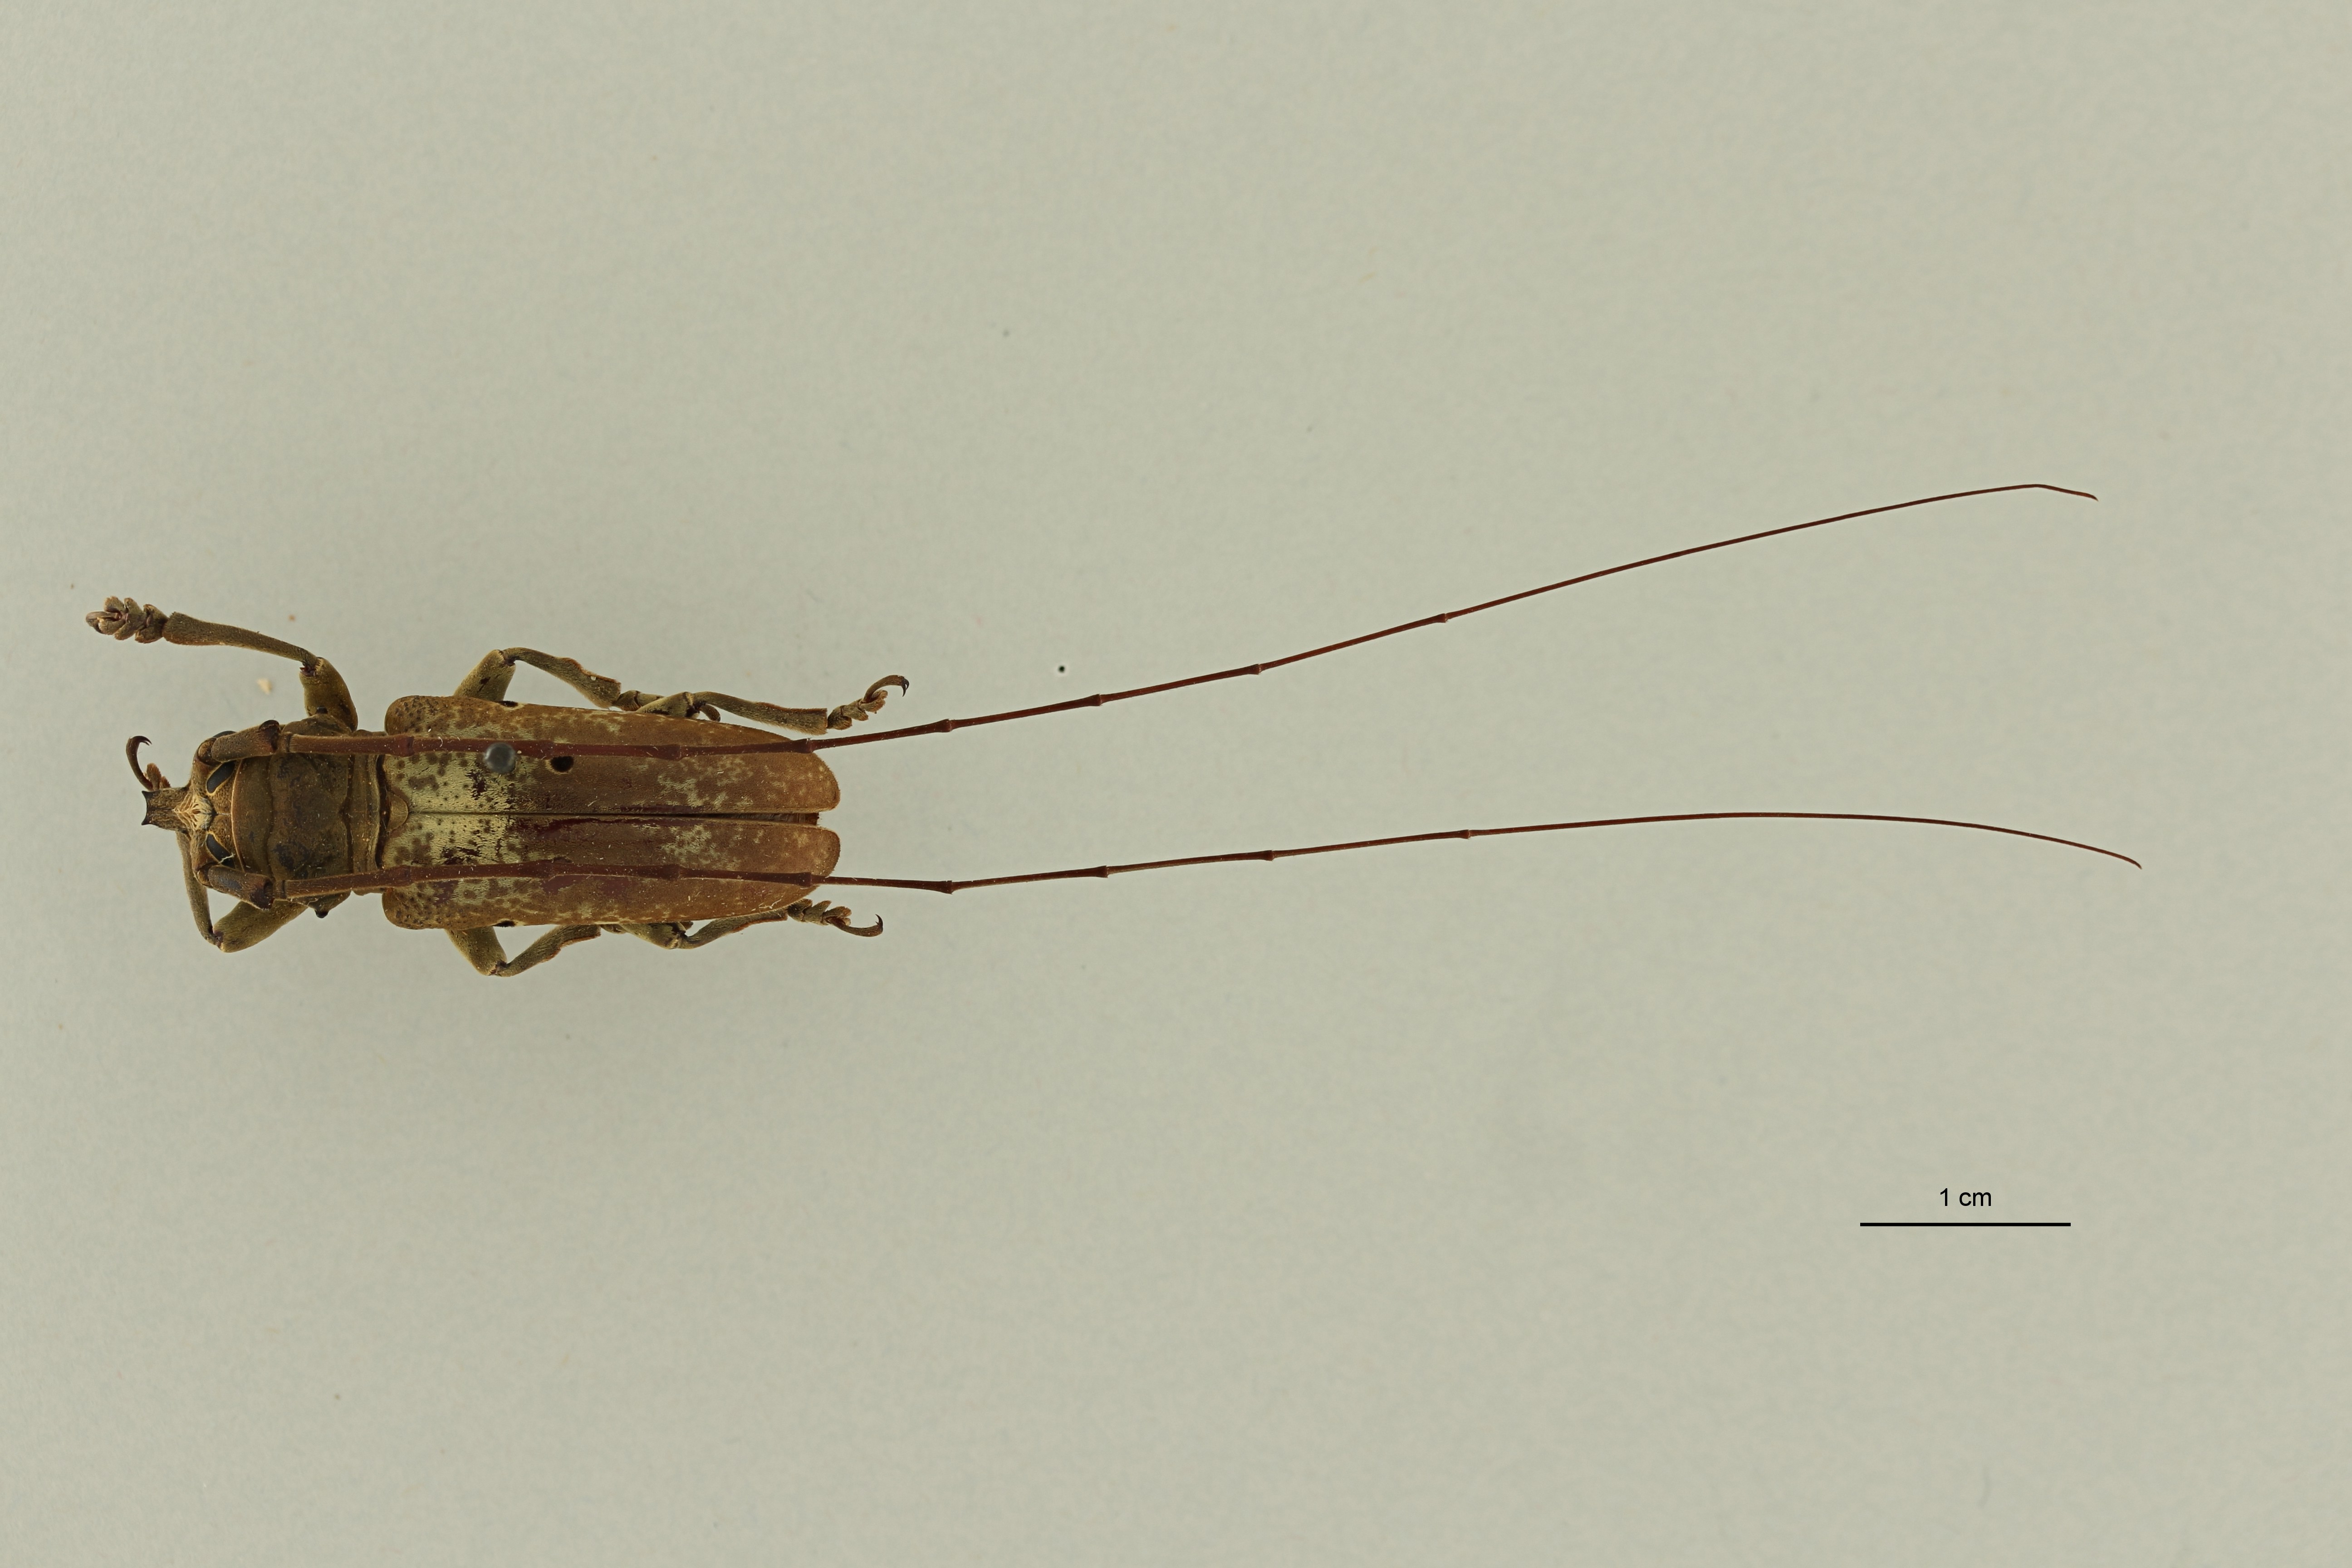 Prosopocera bipunctata bioculata st M DG ZS PMax Scaled.jpeg